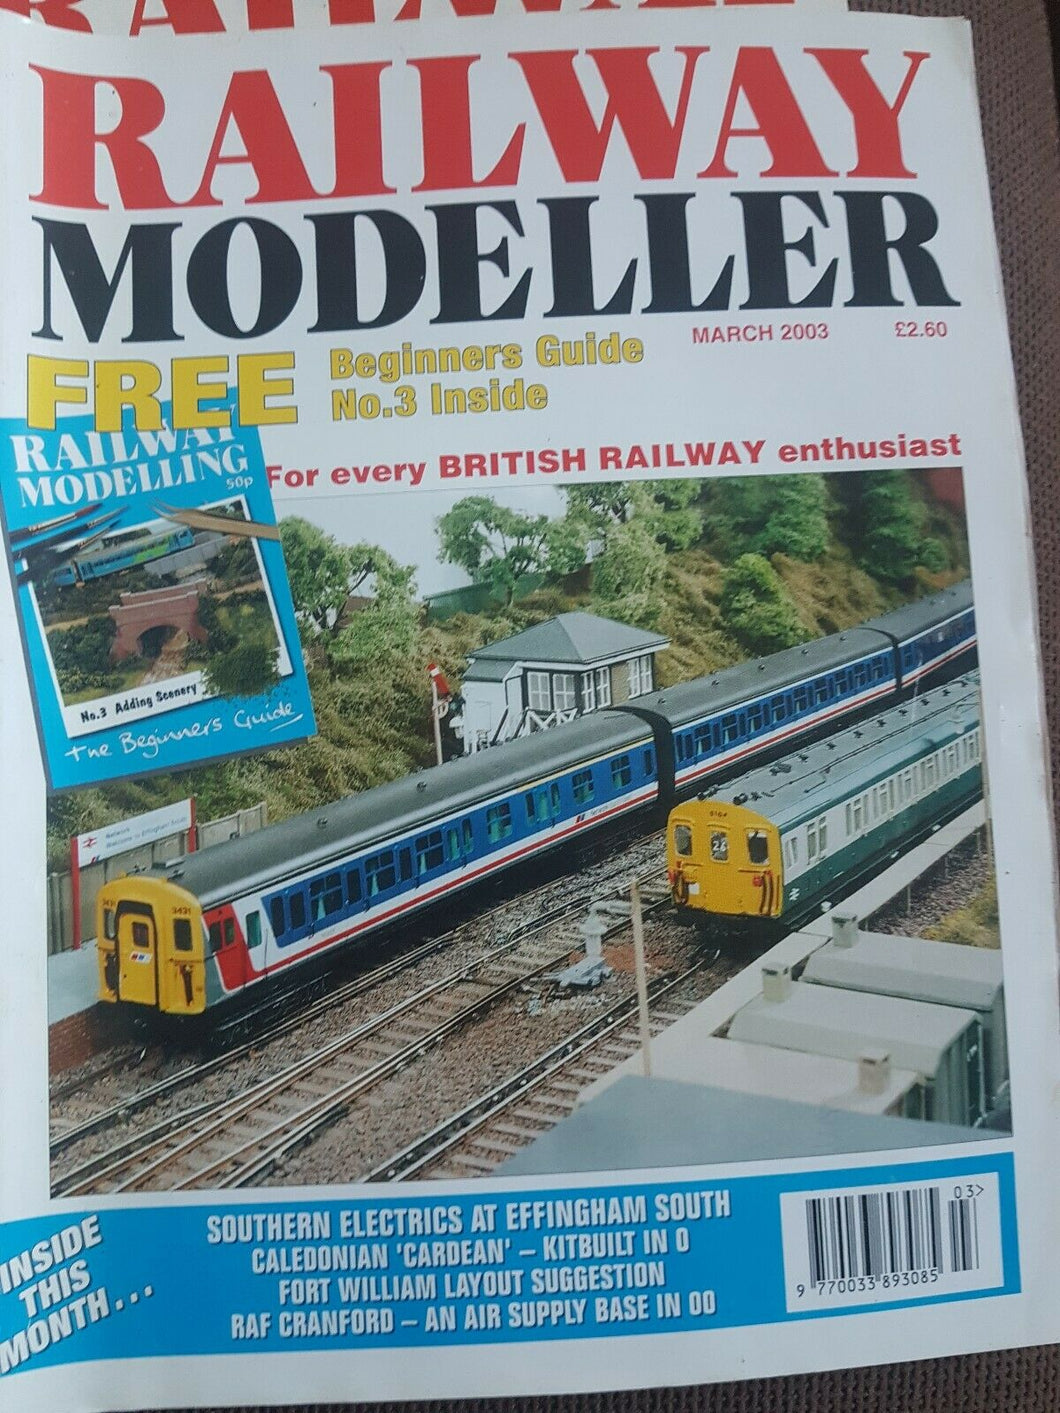 Railway modeller magazine March 2003